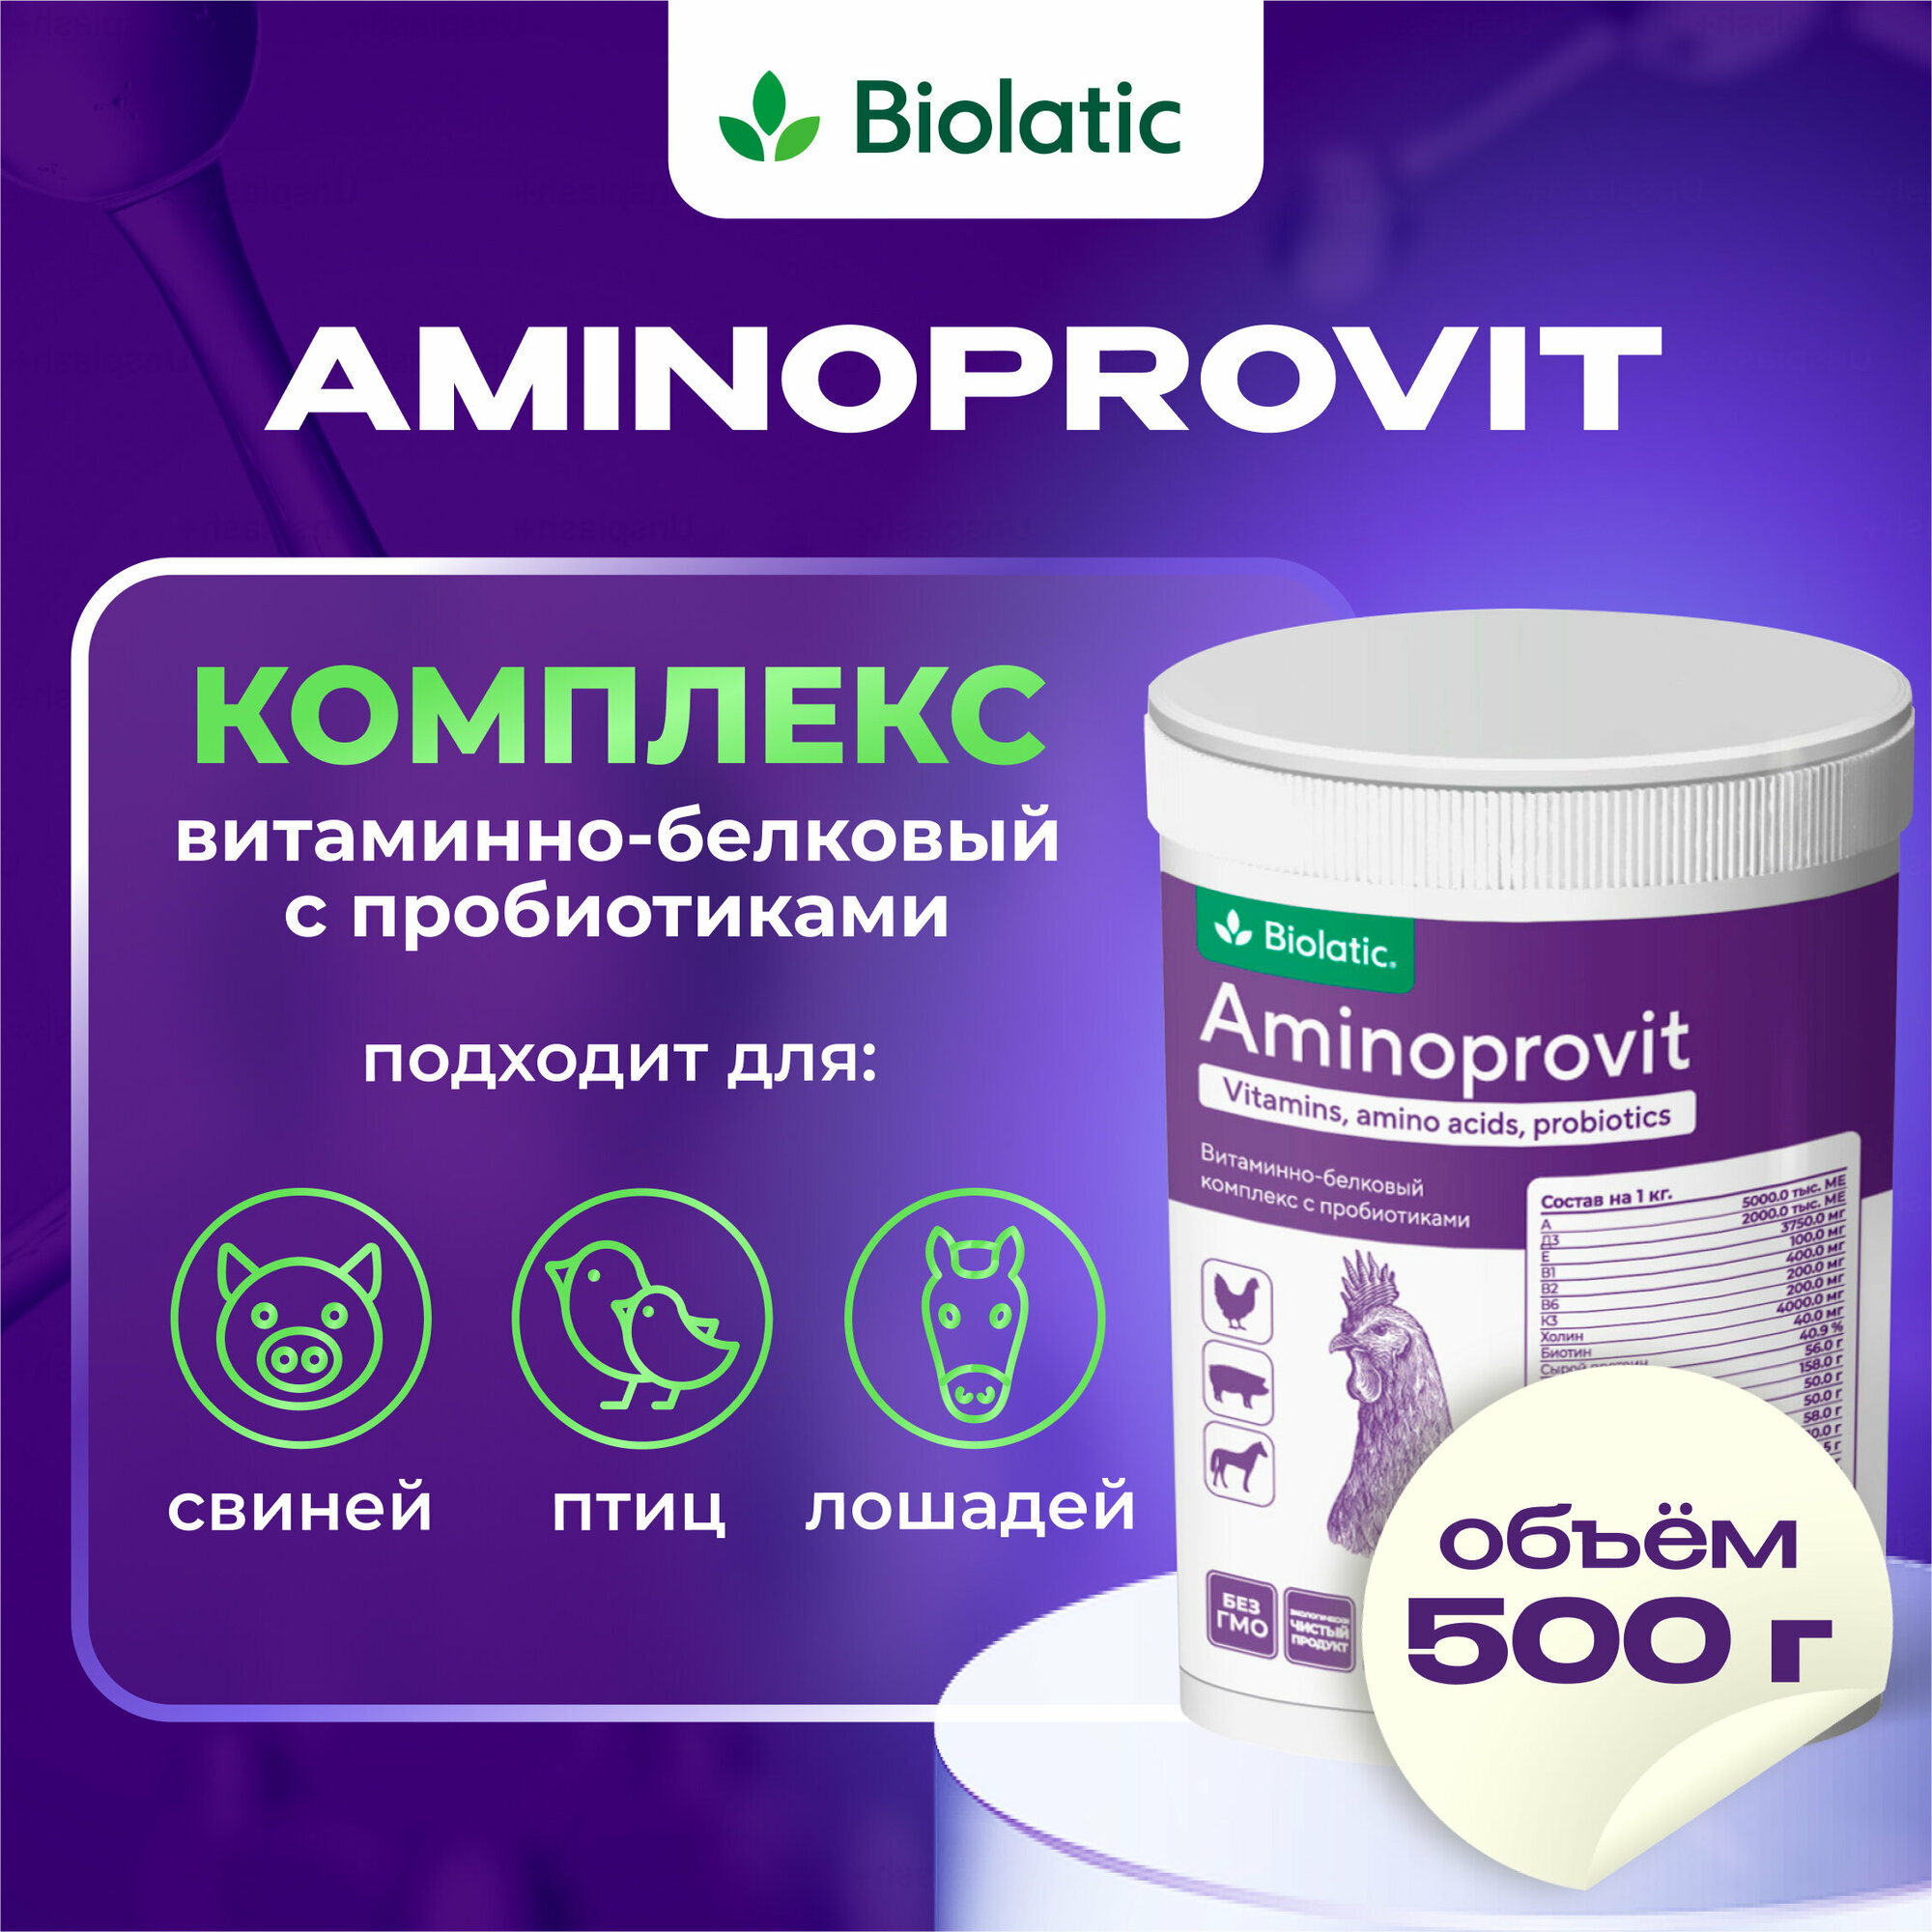 Аминопровит (Aminoprovit) витаминно-белковый комплекс, 500 гр. Biolatic - фотография № 9